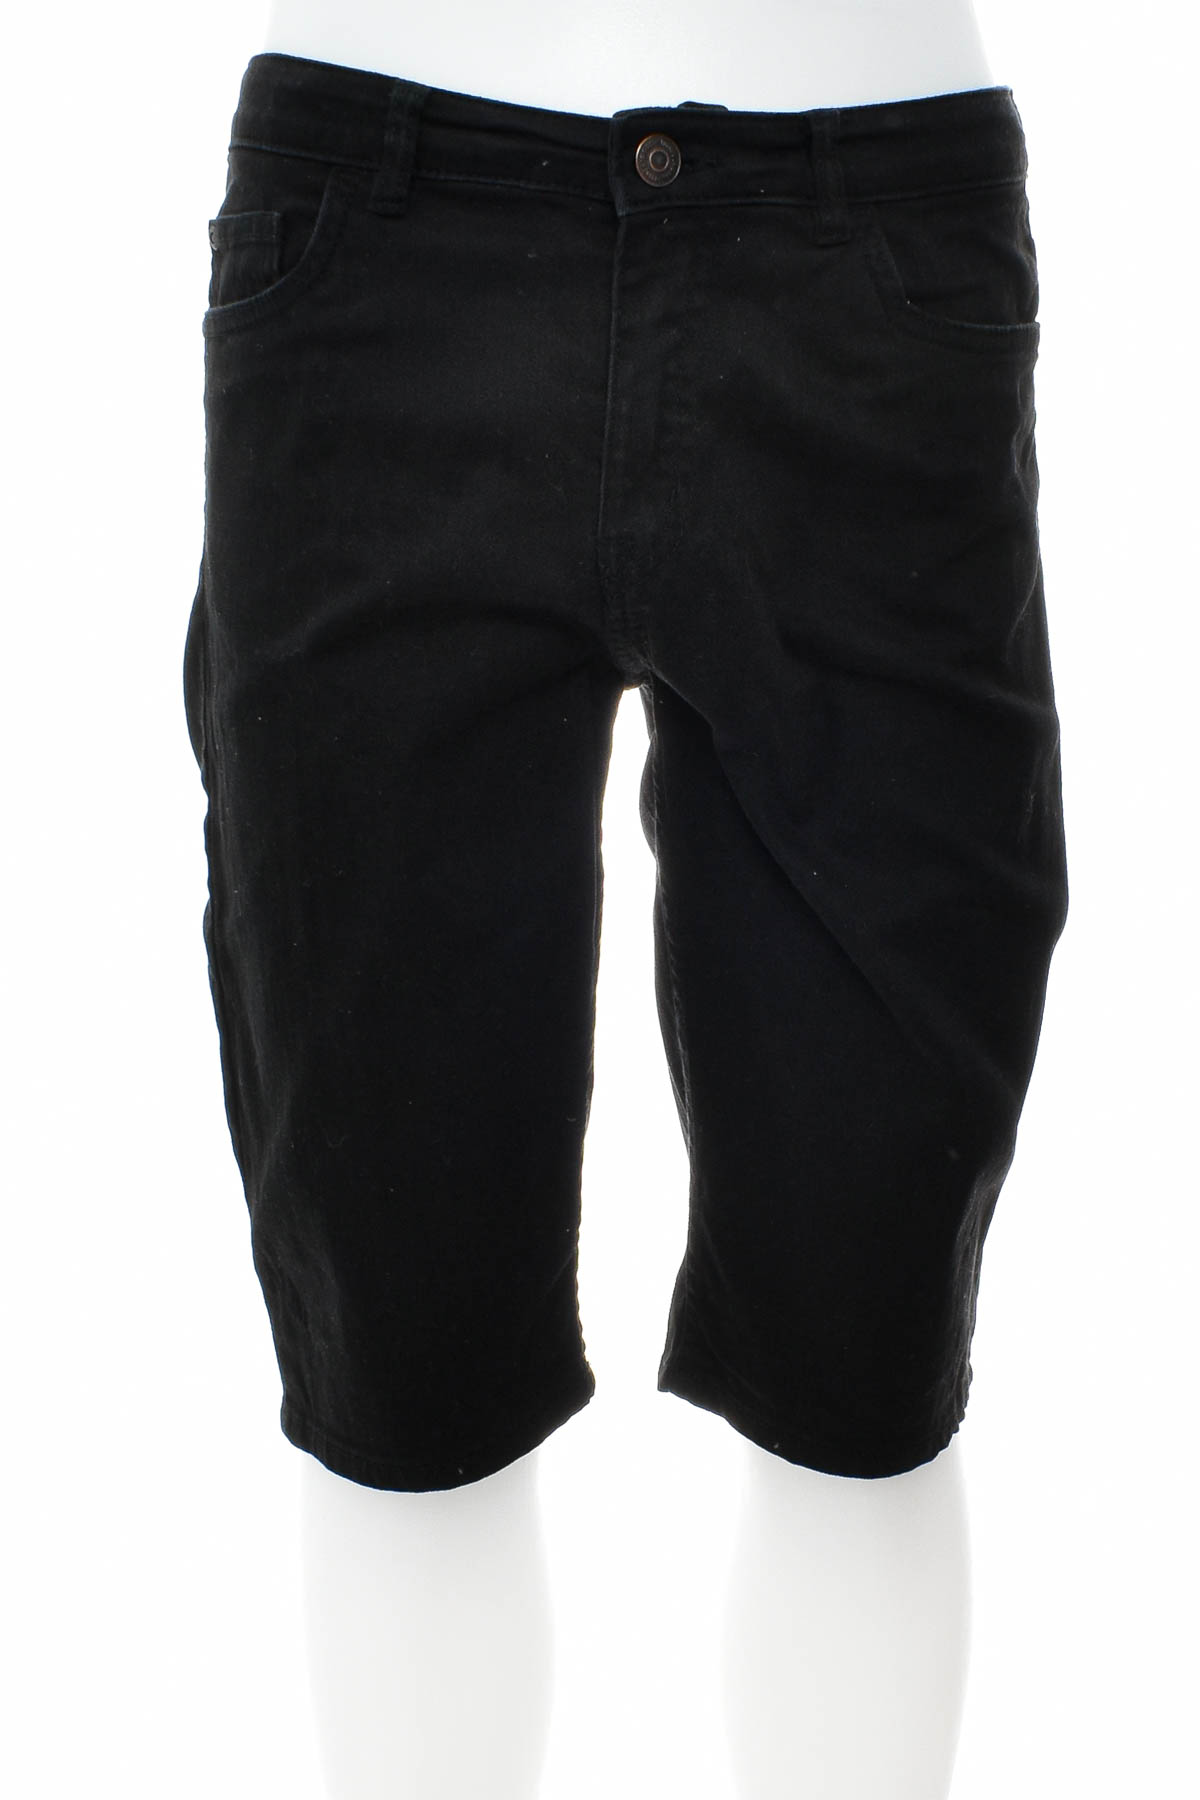 Pantaloni scurți pentru băiat - H&M - 0